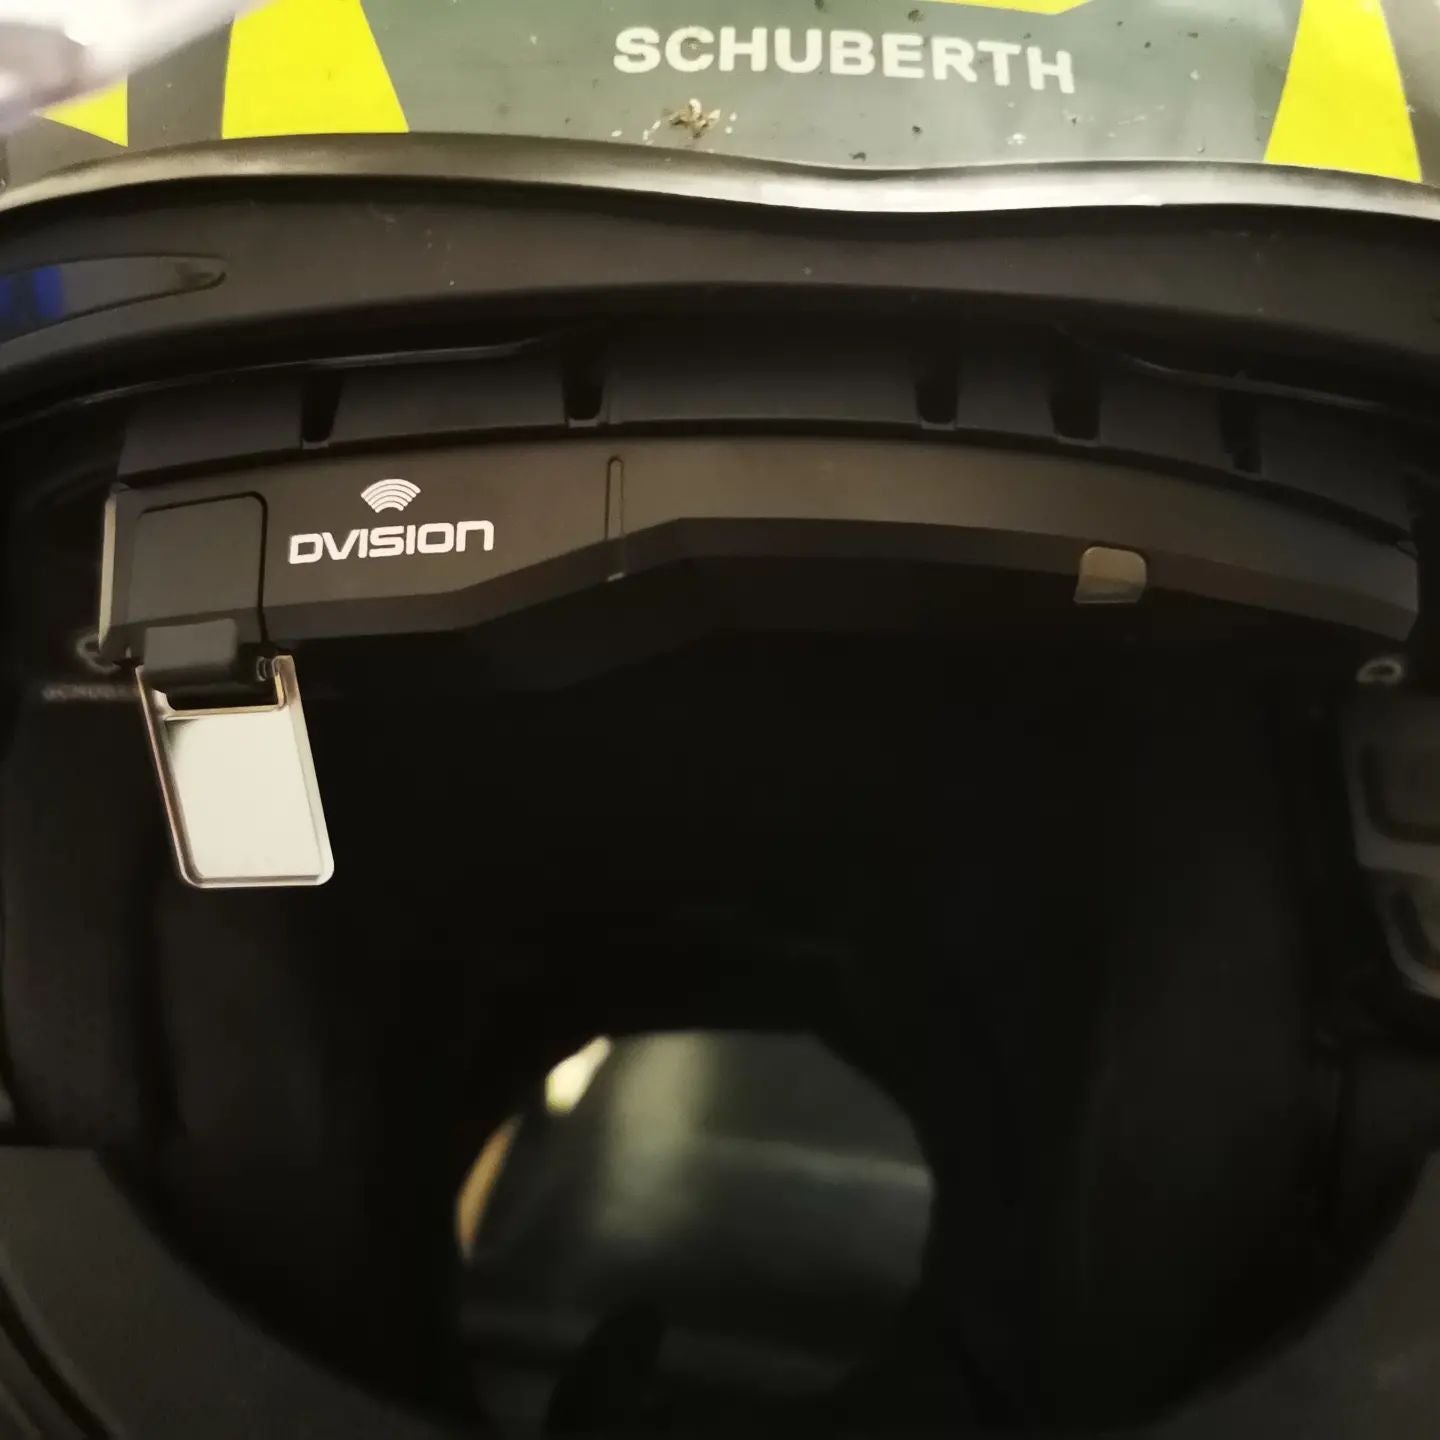 Für das Head Up Display gibt es zwei verschiedene Helm Adapter. Zum einem gibt es den flachen Helmadapter und zum anderen gibt es den breiten Helmadapter mit Laschen.